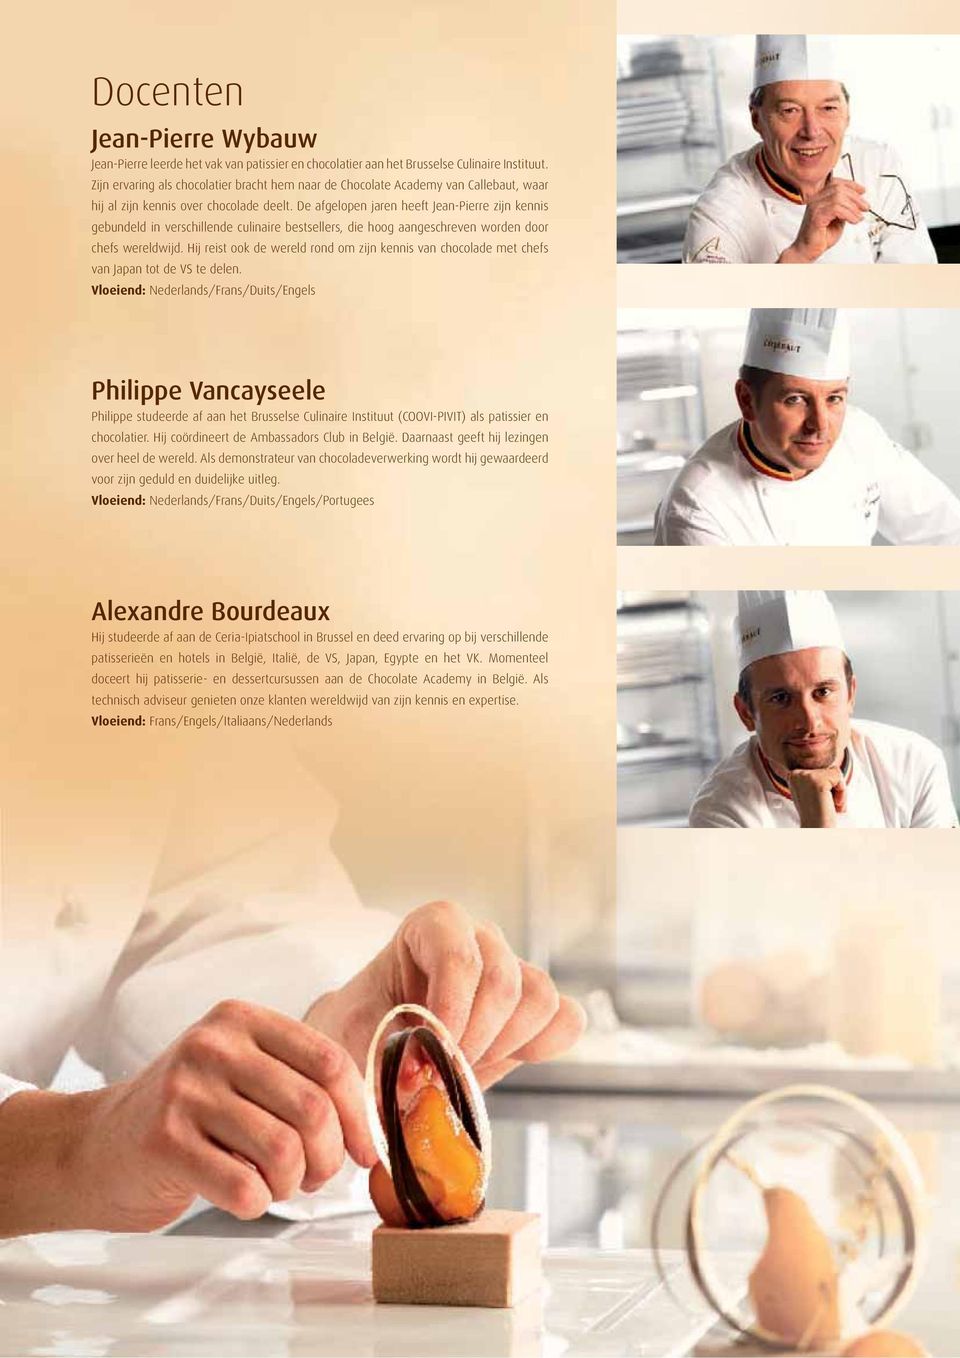 De afgelopen jaren heeft Jean-Pierre zijn kennis gebundeld in verschillende culinaire bestsellers, die hoog aangeschreven worden door chefs wereldwijd.